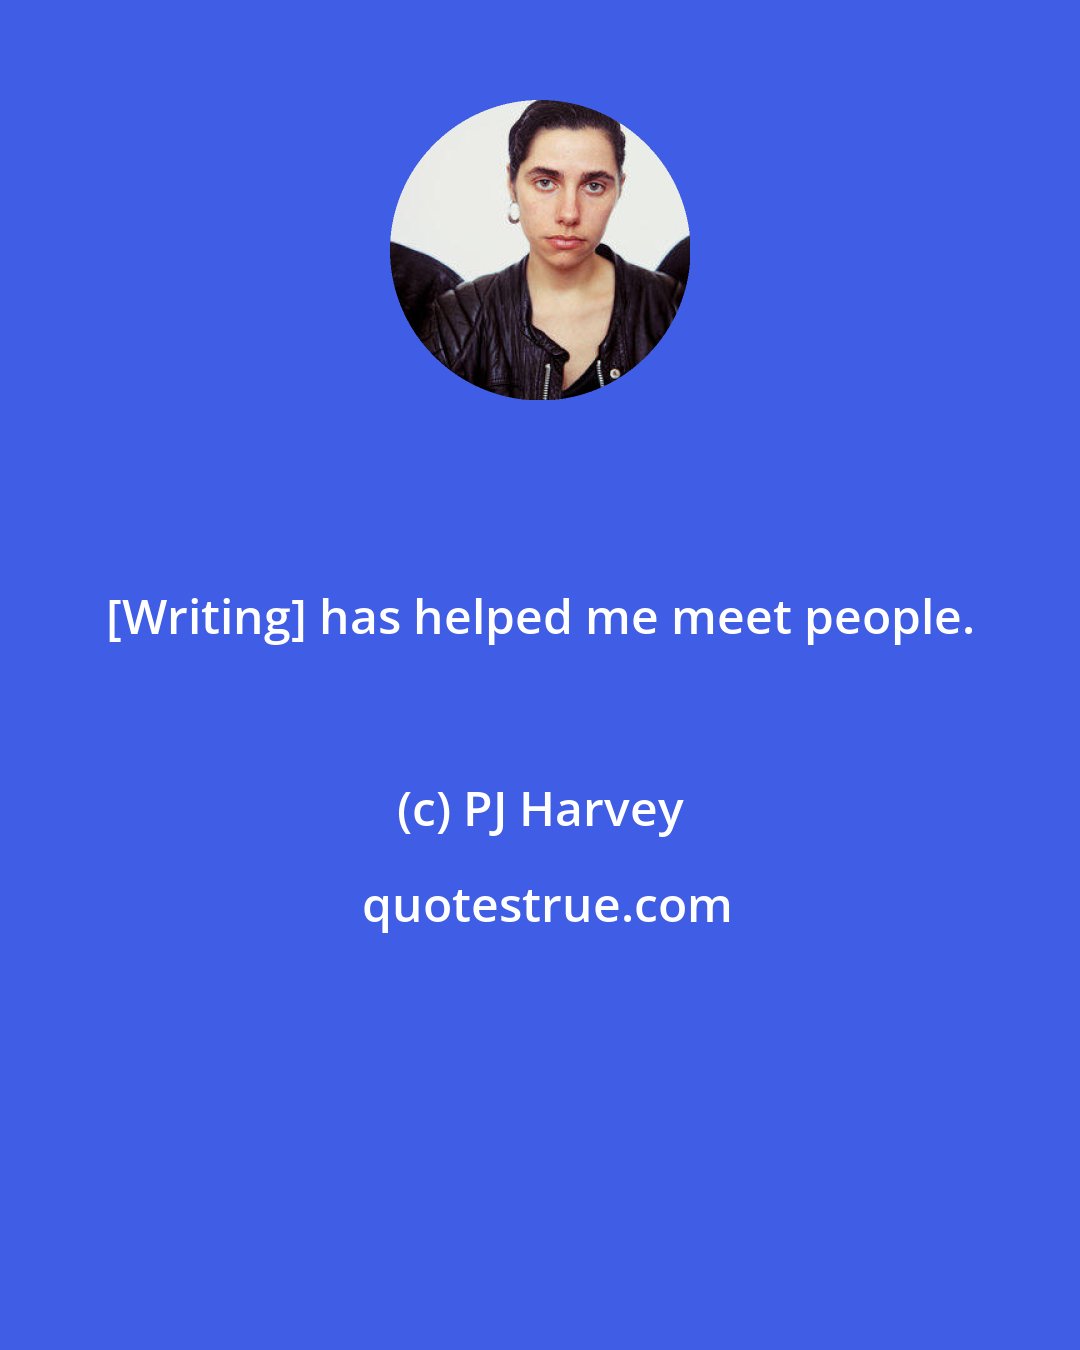 PJ Harvey: [Writing] has helped me meet people.